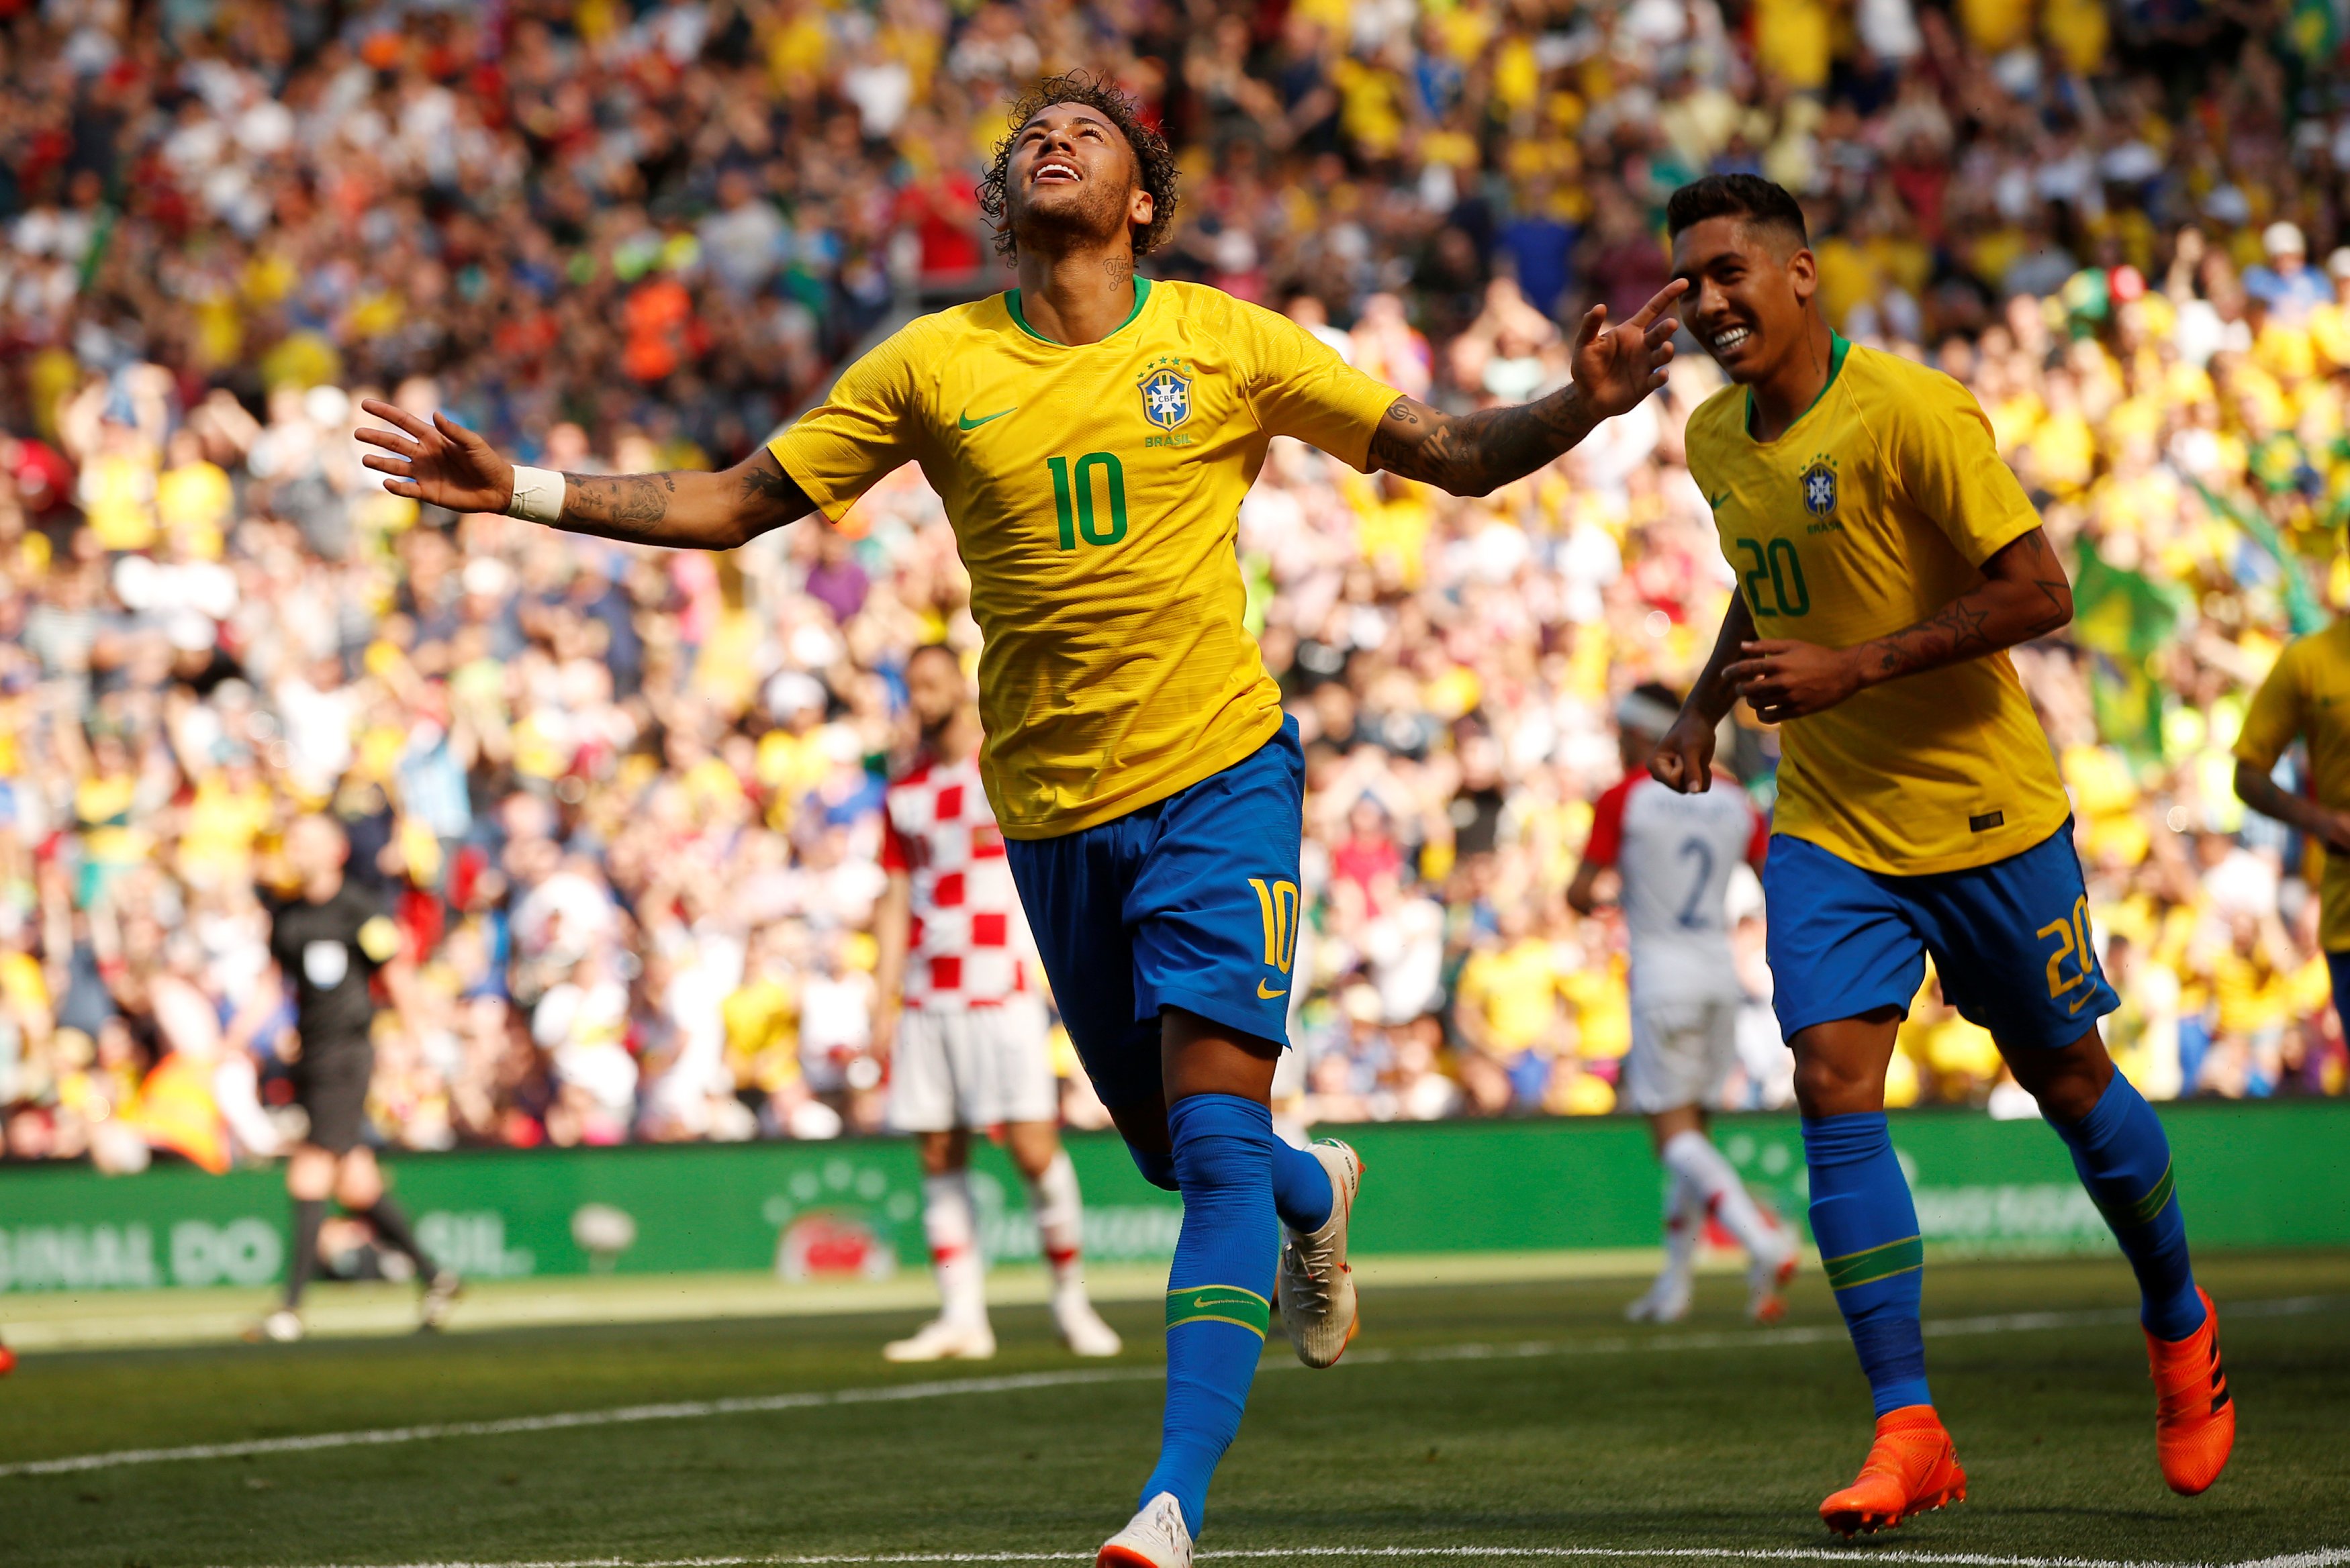 noticia Brasil vence a Croácia em teste antes da Copa do Mundo